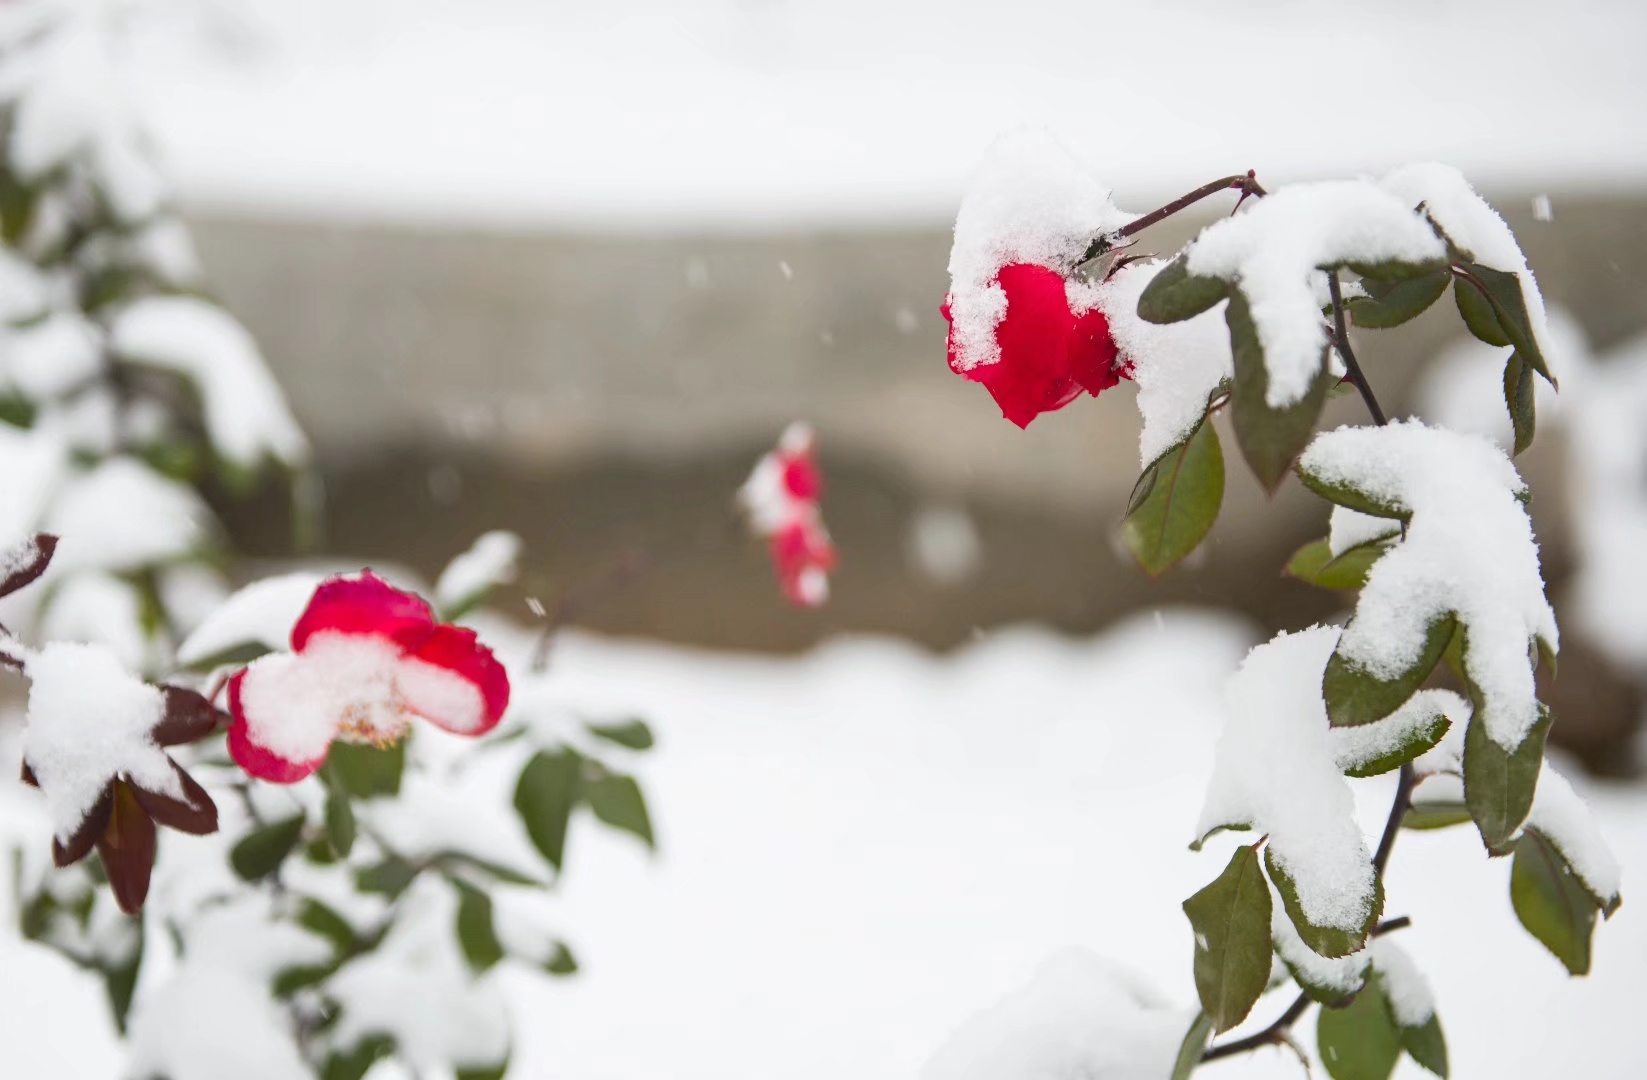 冬季玫瑰 免费图片 在桌面背景上雪中玫瑰 免费图片 玫瑰花 № 16989 | torange.biz